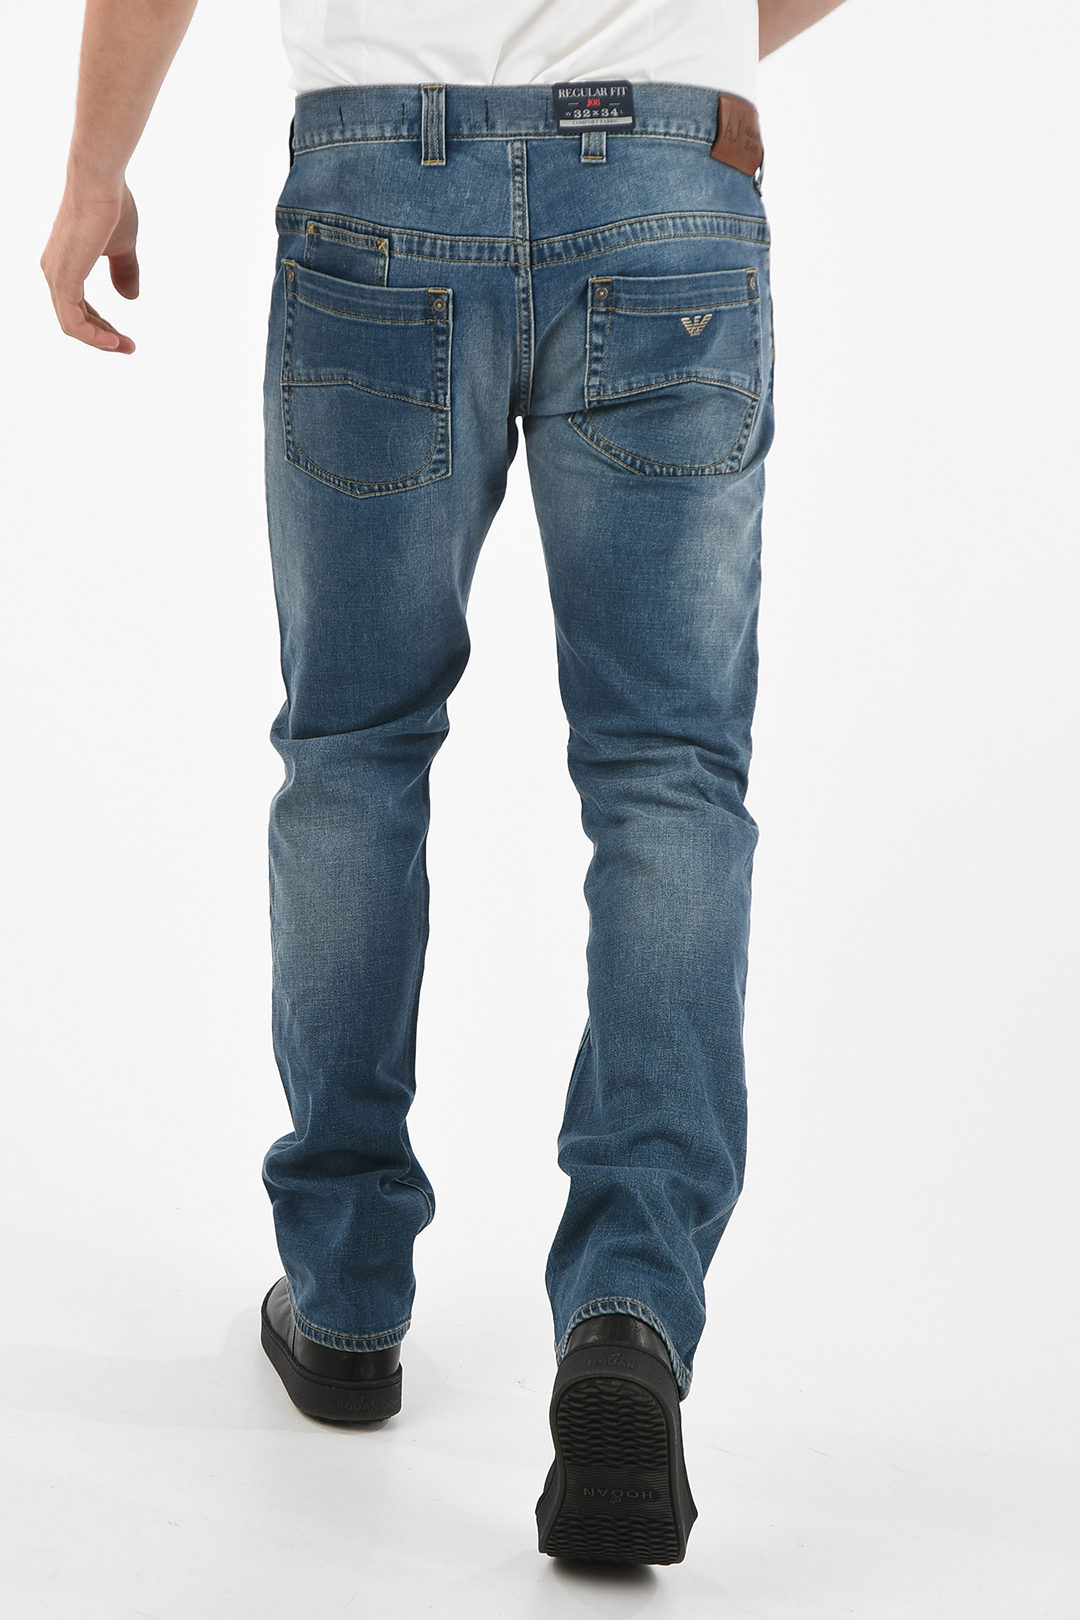 Uitschakelen Moreel uit Armani ARMANI JEANS 20cm Regular Fit J08 Jeans L34 men - Glamood Outlet